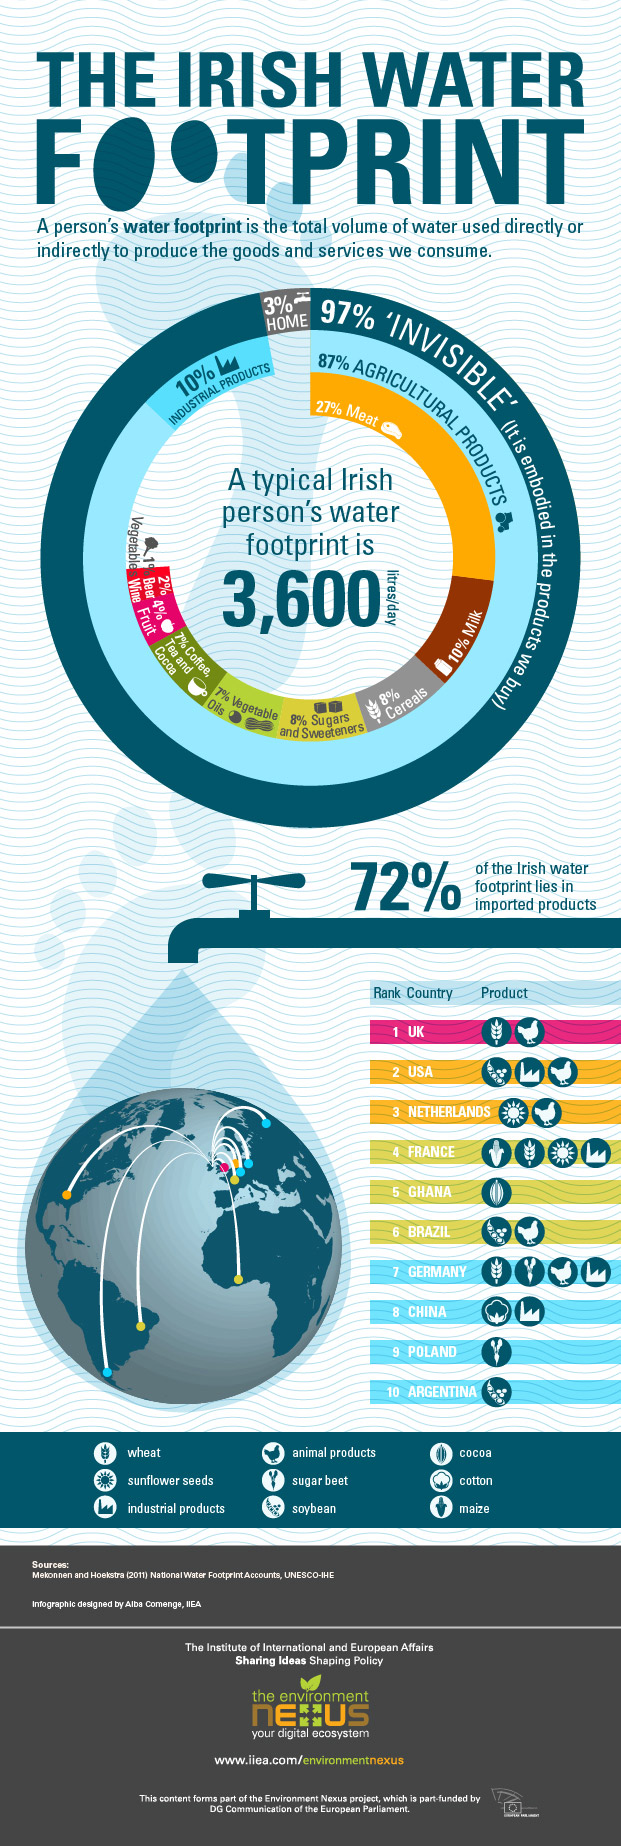 The-Irish-Water-Footprint_infographic